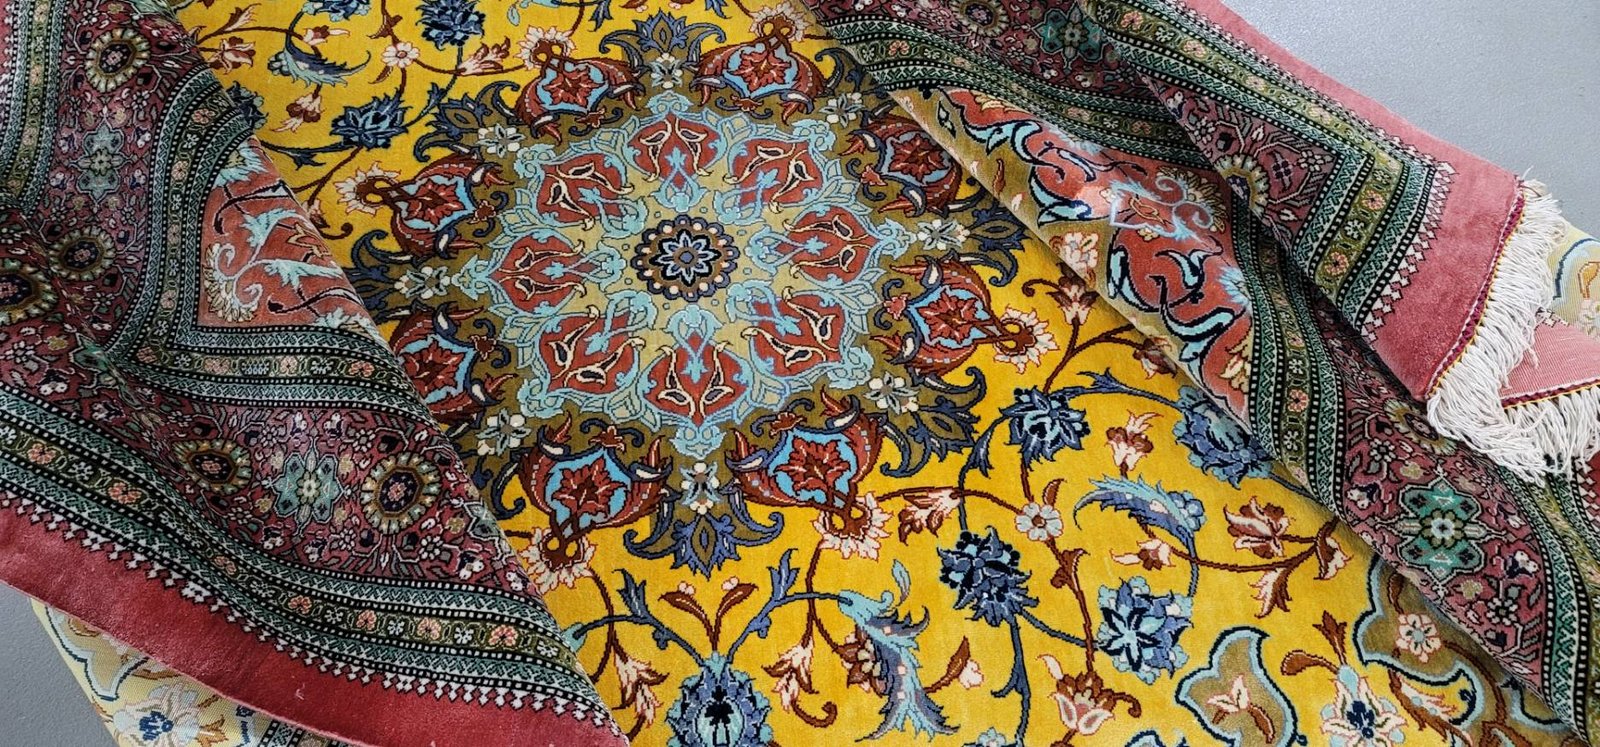 絨毯を織っていた証拠として古くから残っているのは、使い古された絨毯の破片に過ぎない。そして、そのような断片はペルシャのセルジューク時代以前（紀元13〜14世紀）の絨毯織りの特徴を認識するのにあまり役立たない。